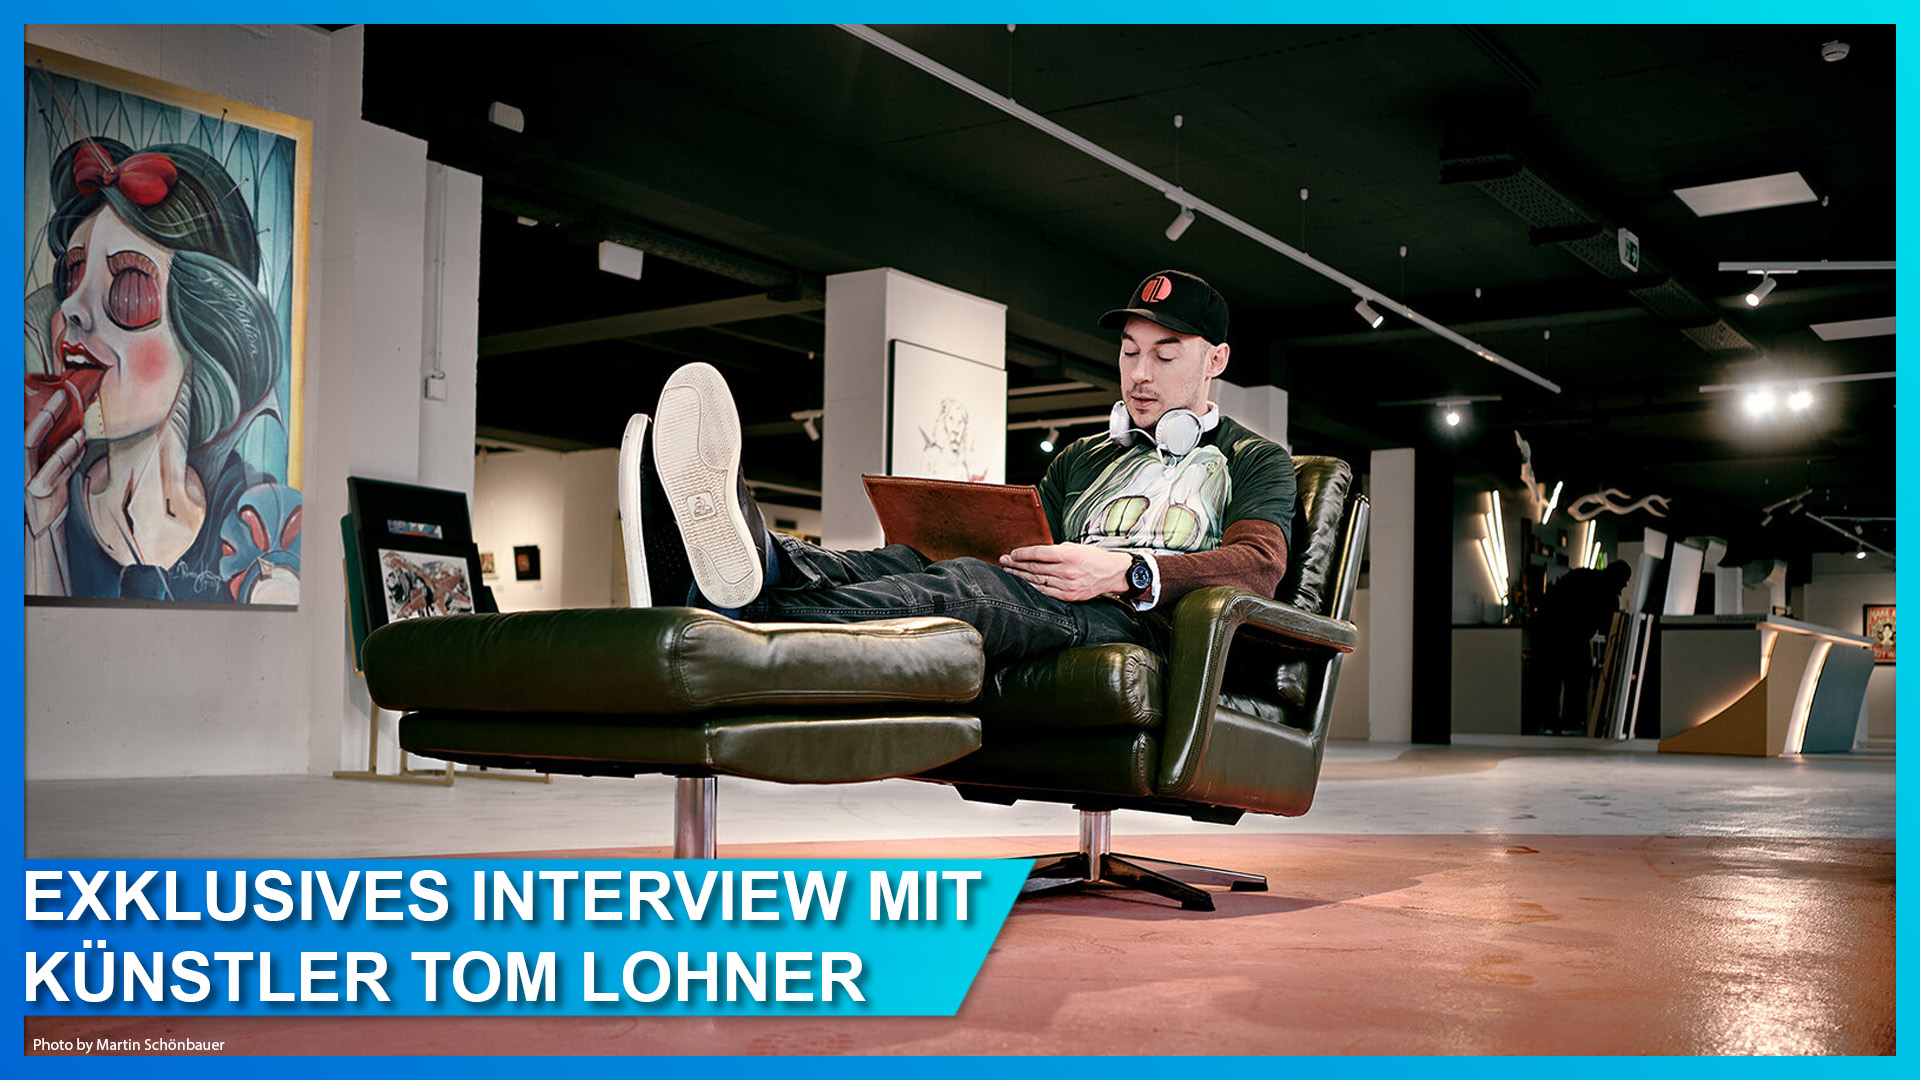 Exklusives Interview mit dem österreichischen Künstler Tom Lohner und seinen Disney Artworks